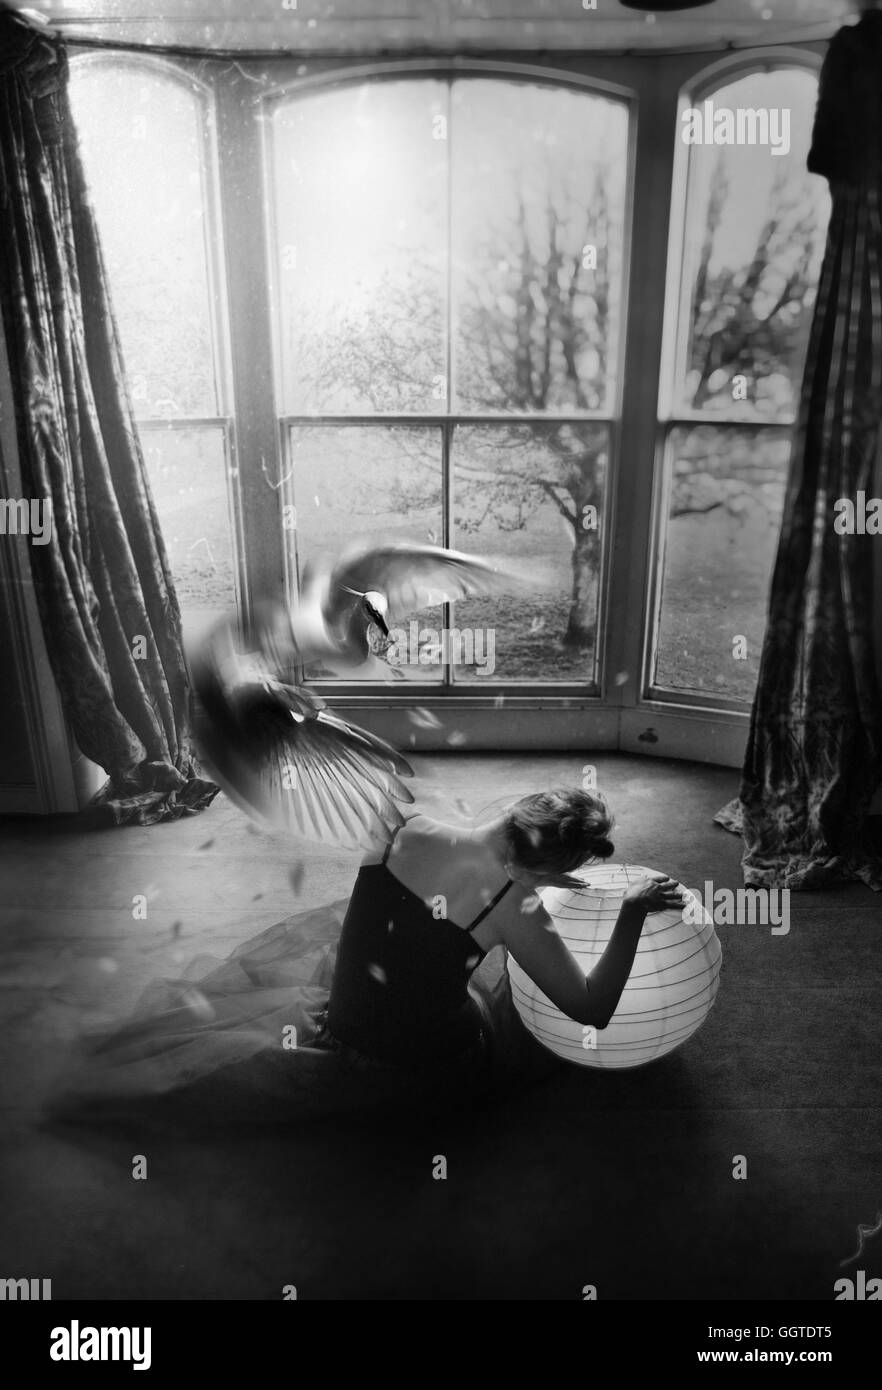 Vue arrière de la jeune femme assise sur le sol tenant une boule avec une big white bird flying Banque D'Images